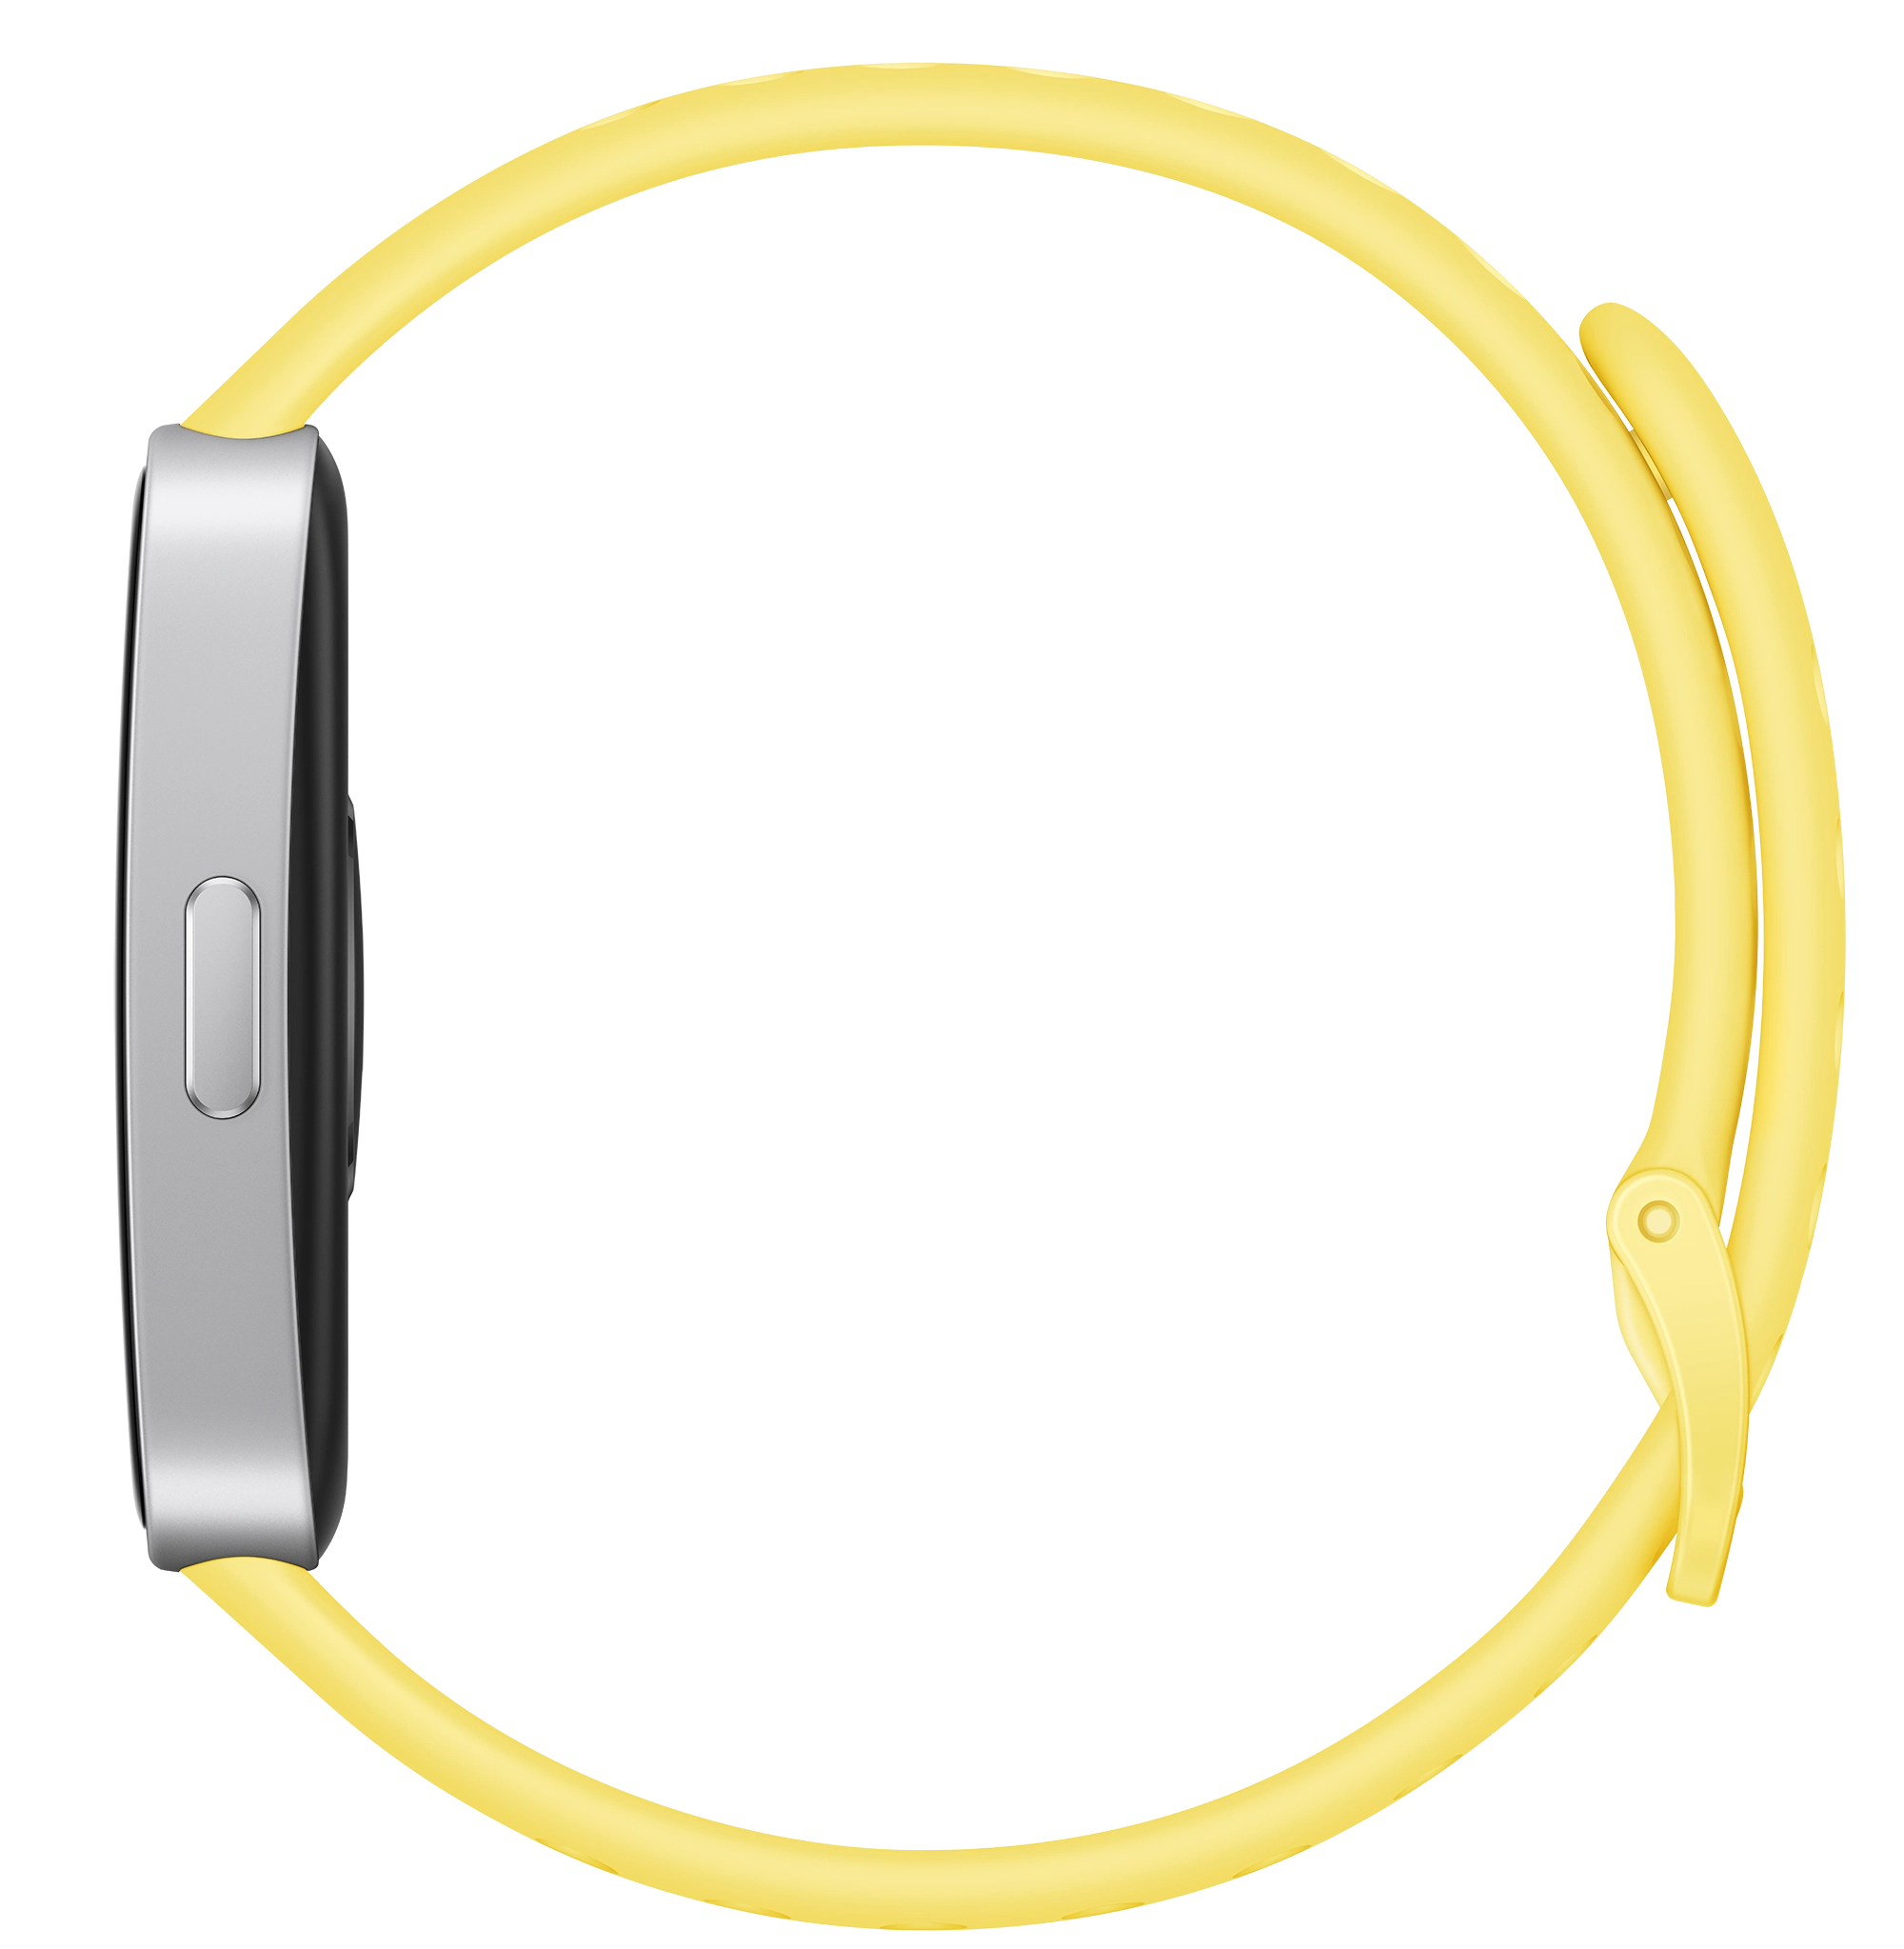 Smartband Huawei Band 9 - żółty